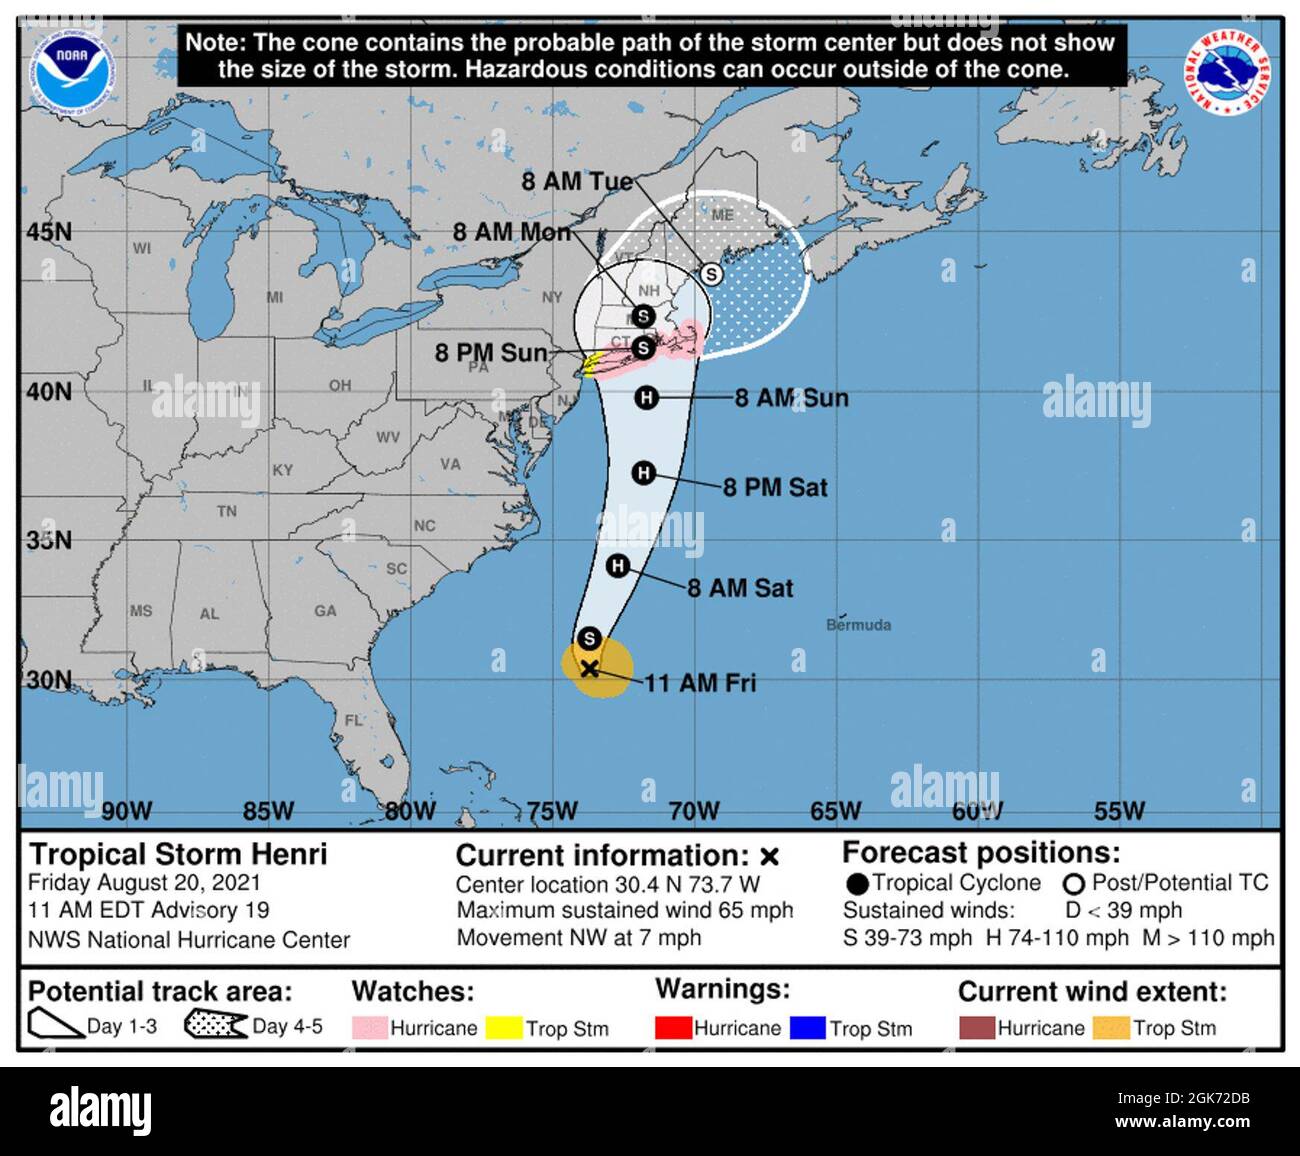 La piste projetée de la tempête tropicale Henri par le Service météorologique national en date du 20 août 2021. La tempête devrait tomber en Nouvelle-Angleterre le dimanche 22 août 2021. Banque D'Images